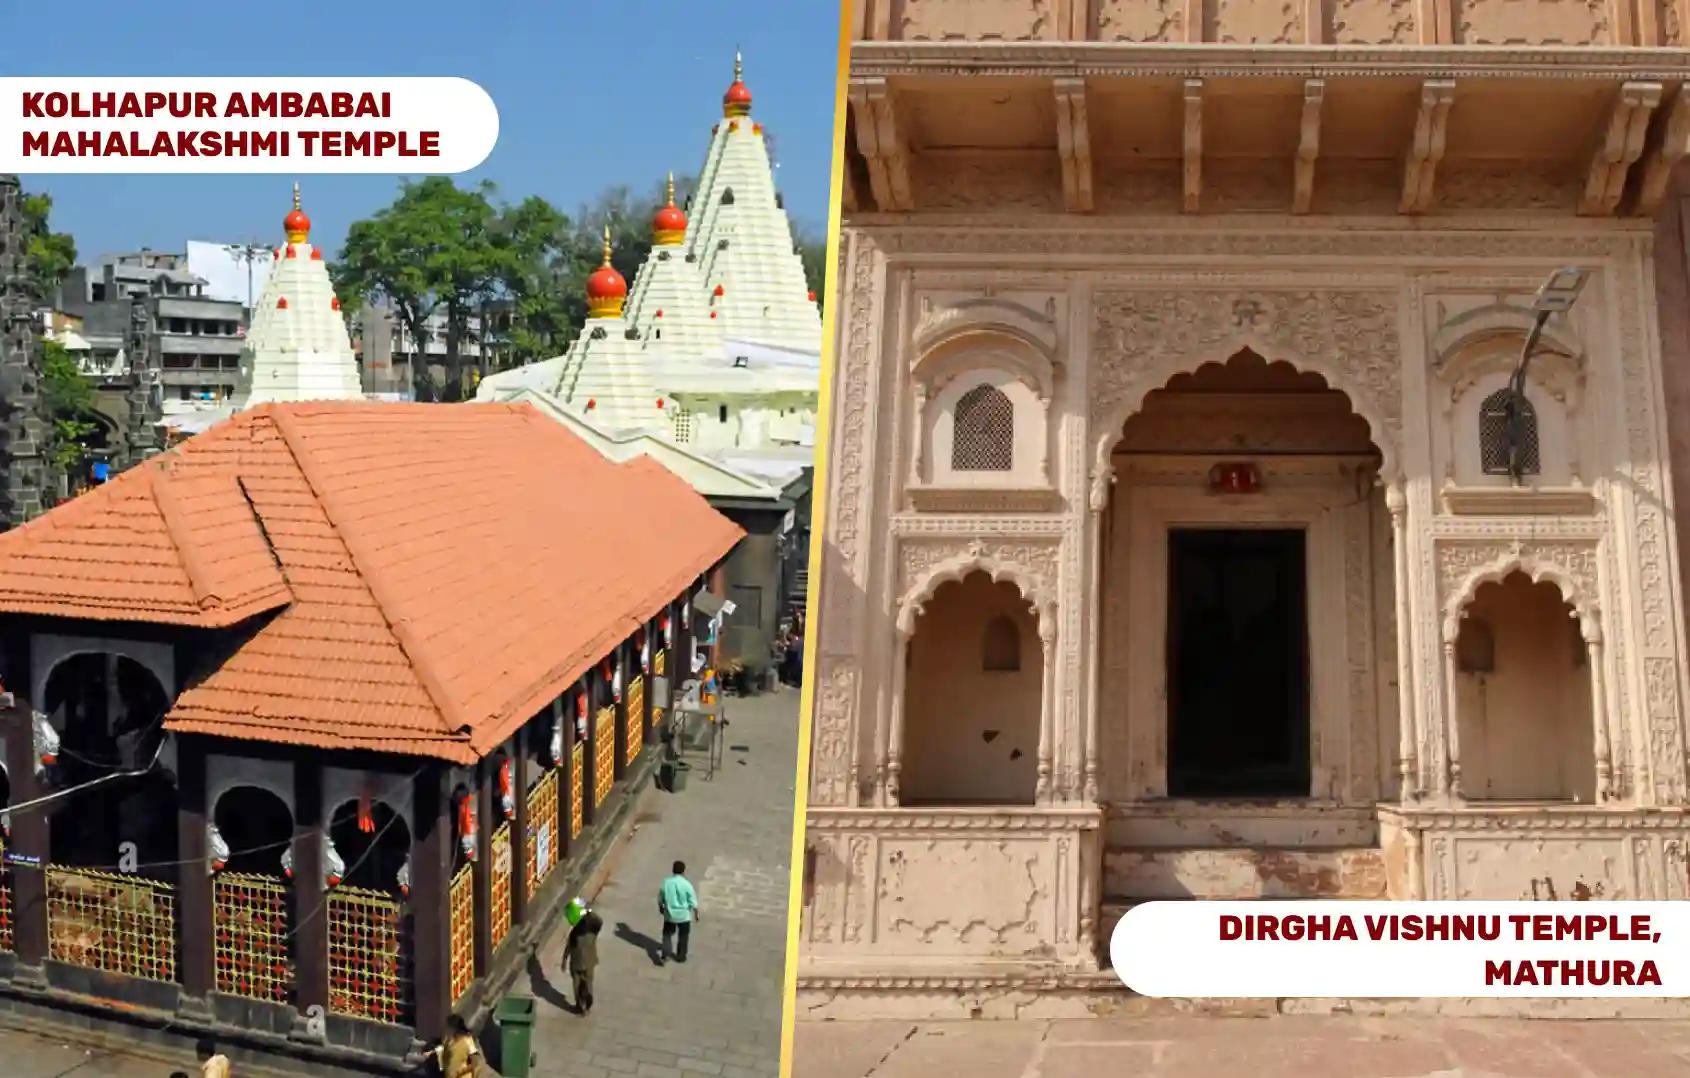 श्री दीर्घ विष्णु मंदिर एवं शक्तिपीठ माँ महालक्ष्मी अम्बाबाई मंदिर, मथुरा, कोल्हापुर